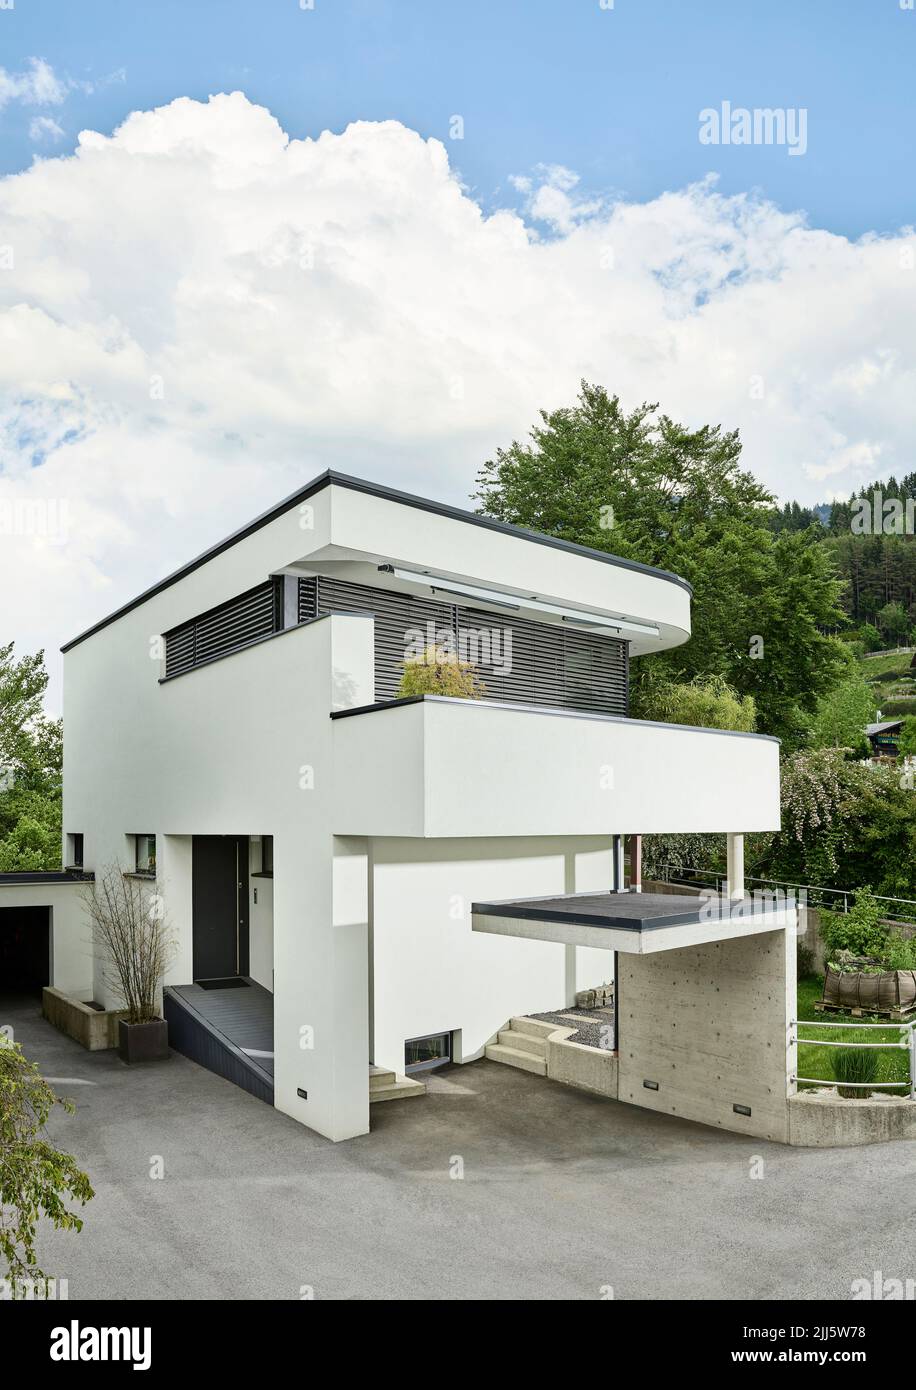 Austria, Tyrol, Exterior of white painted single-family house Stock Photo